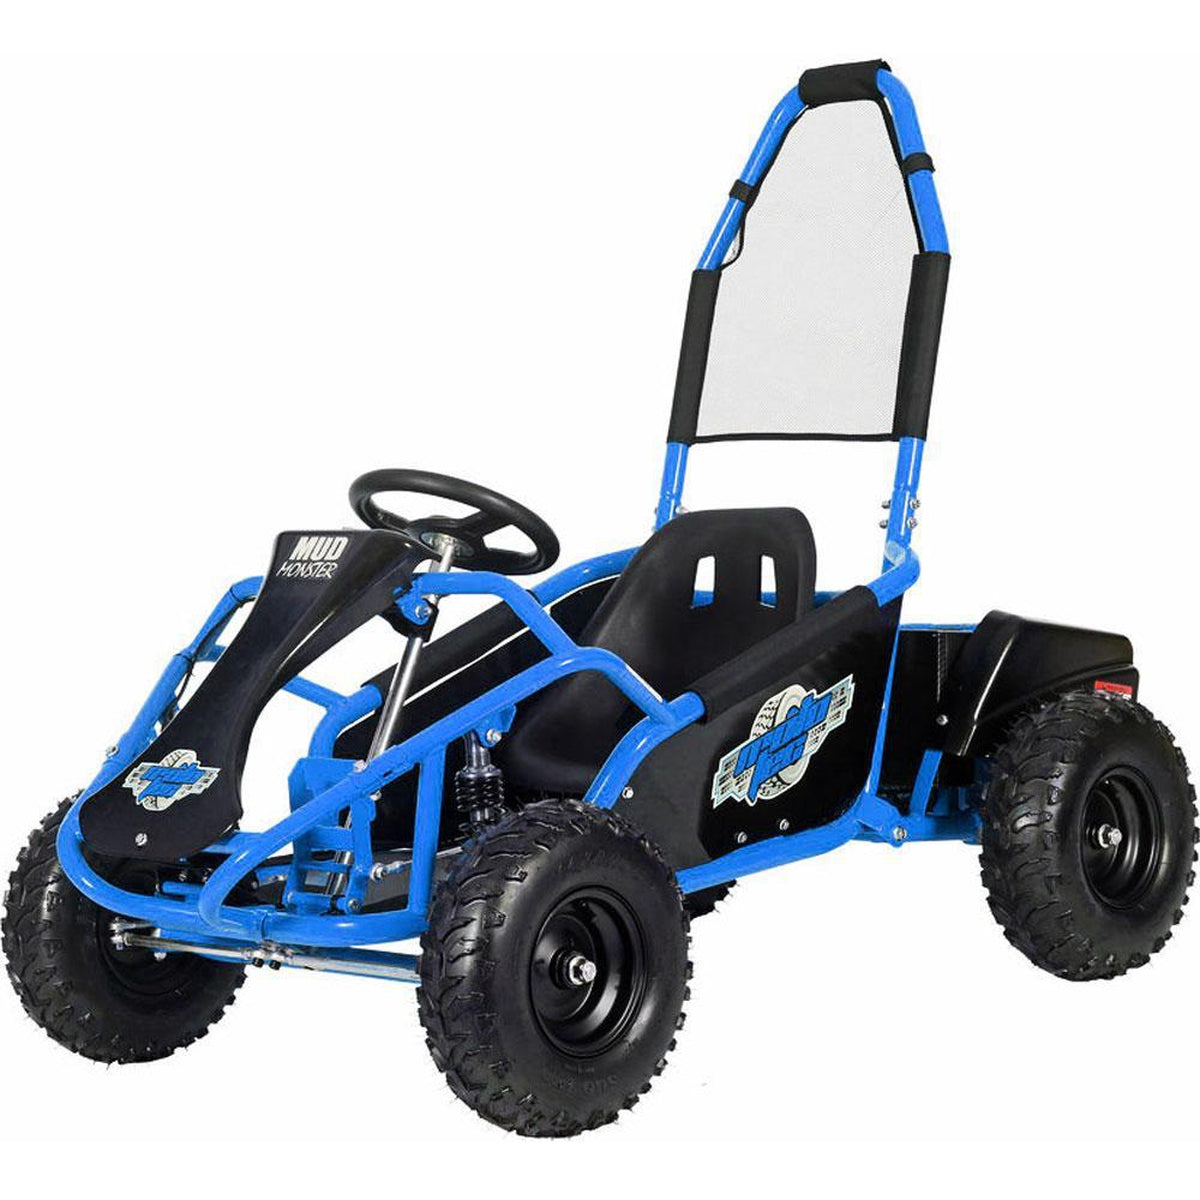 MotoTec Mud Monster Kids Electric 48v 1000w Go Kart Full Suspension - Ebikecentric